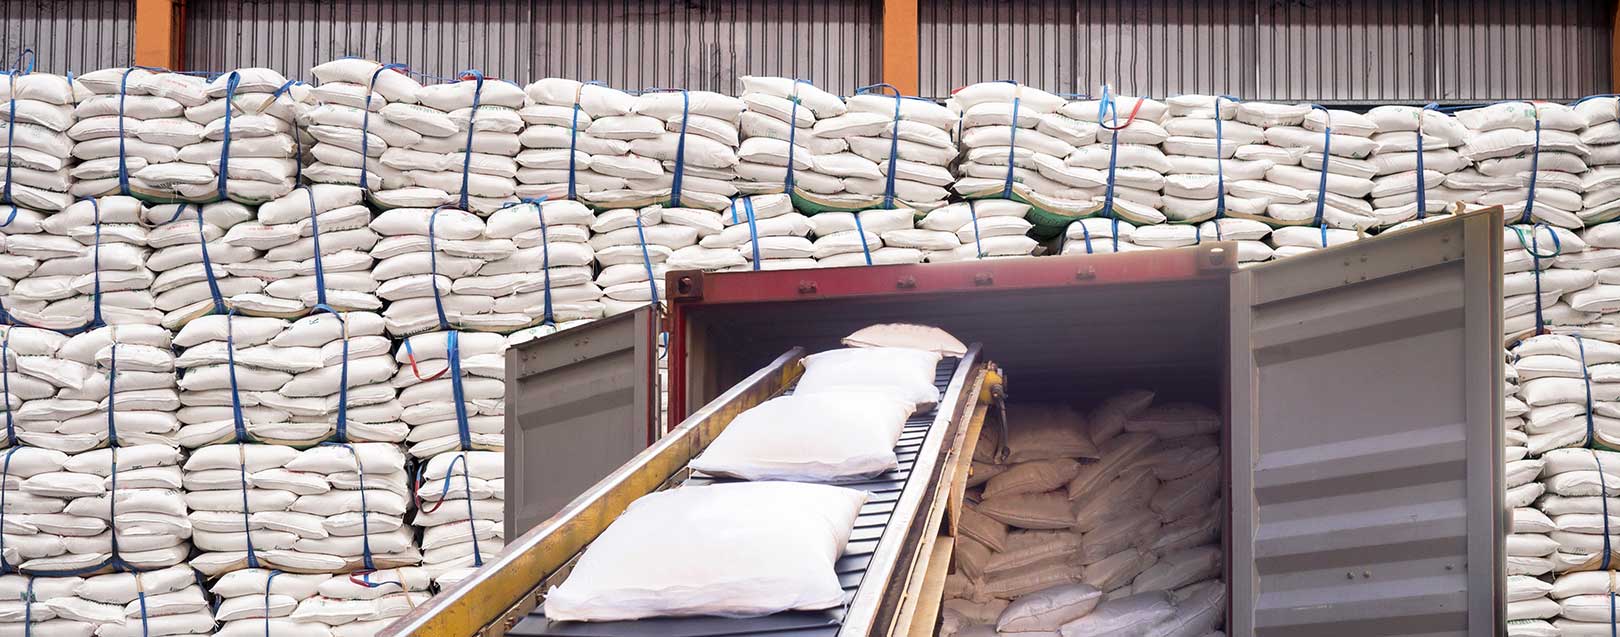 Allocation of sugar quantity for export under tariff rate quota, USDA